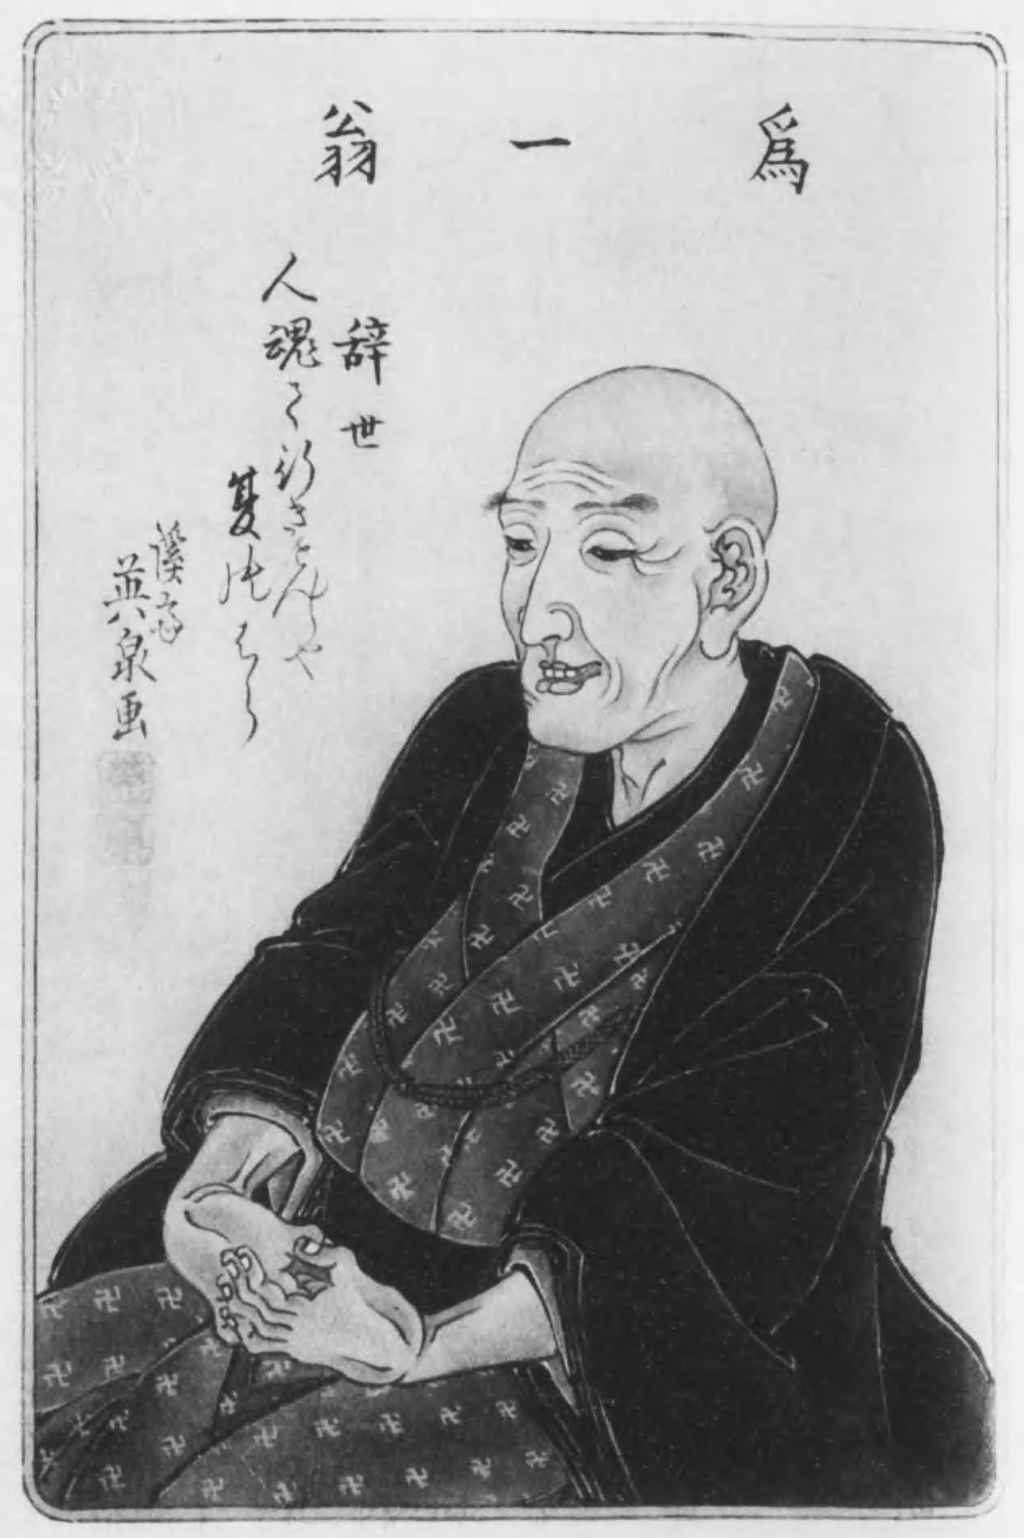 Portrait of Hokusai by disciple Keisai Eisen